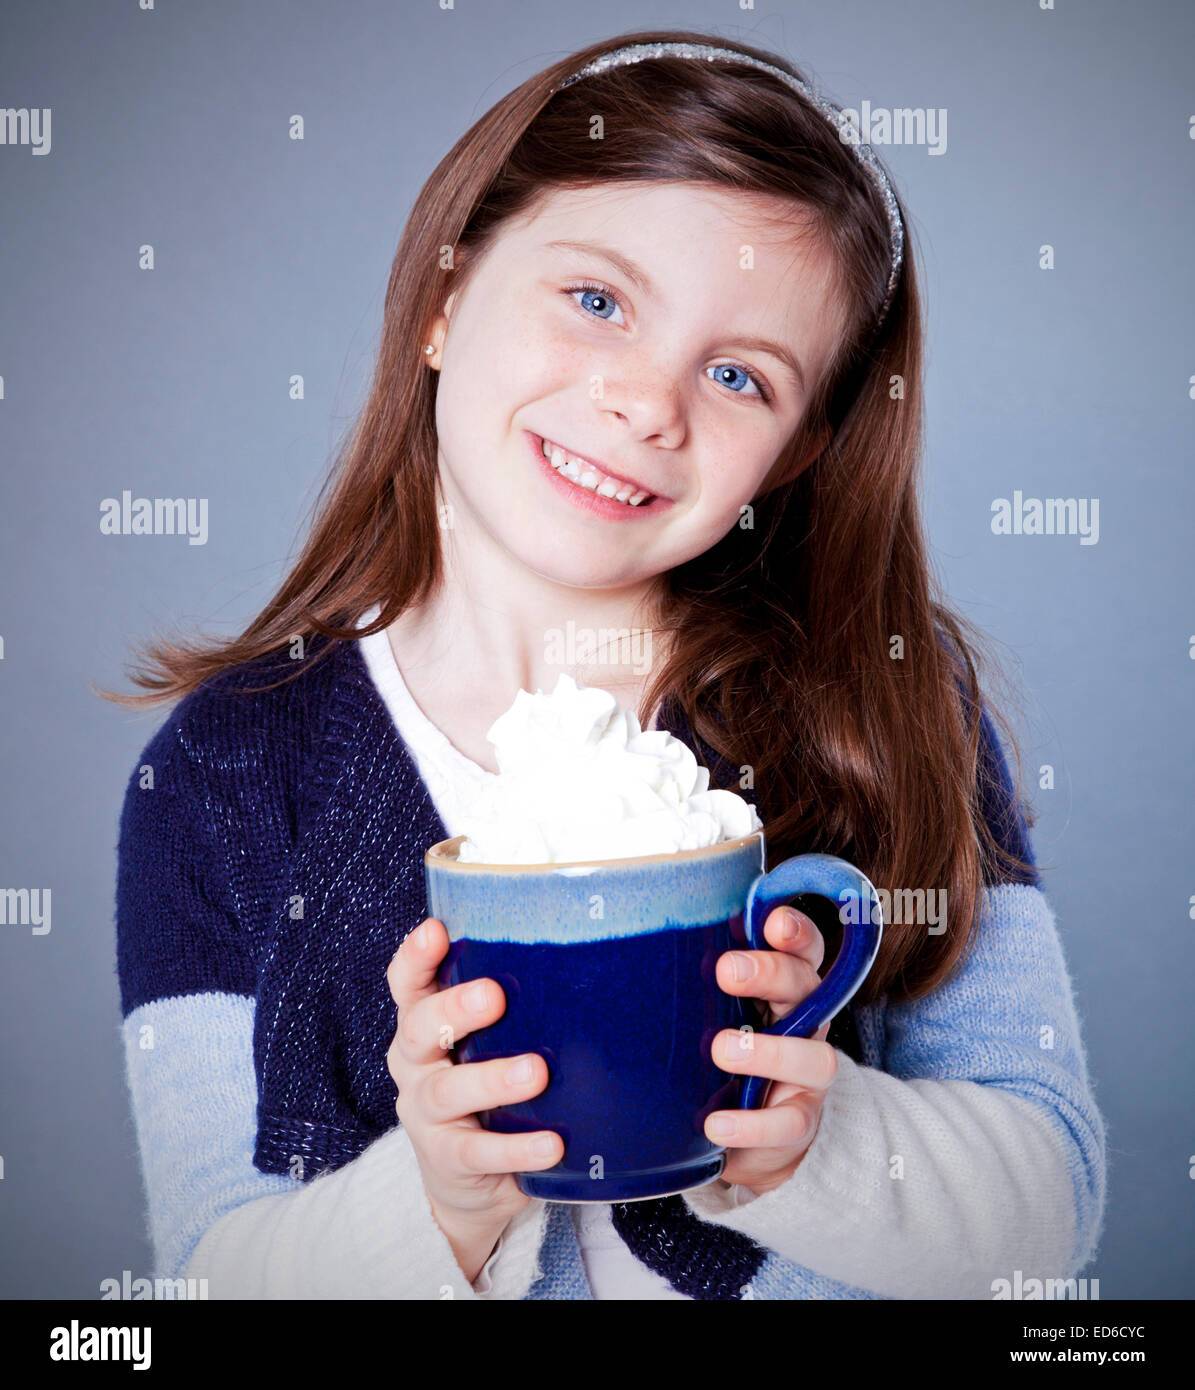 Jolie fille avec une tasse de chocolat chaud sur un fond gris Banque D'Images